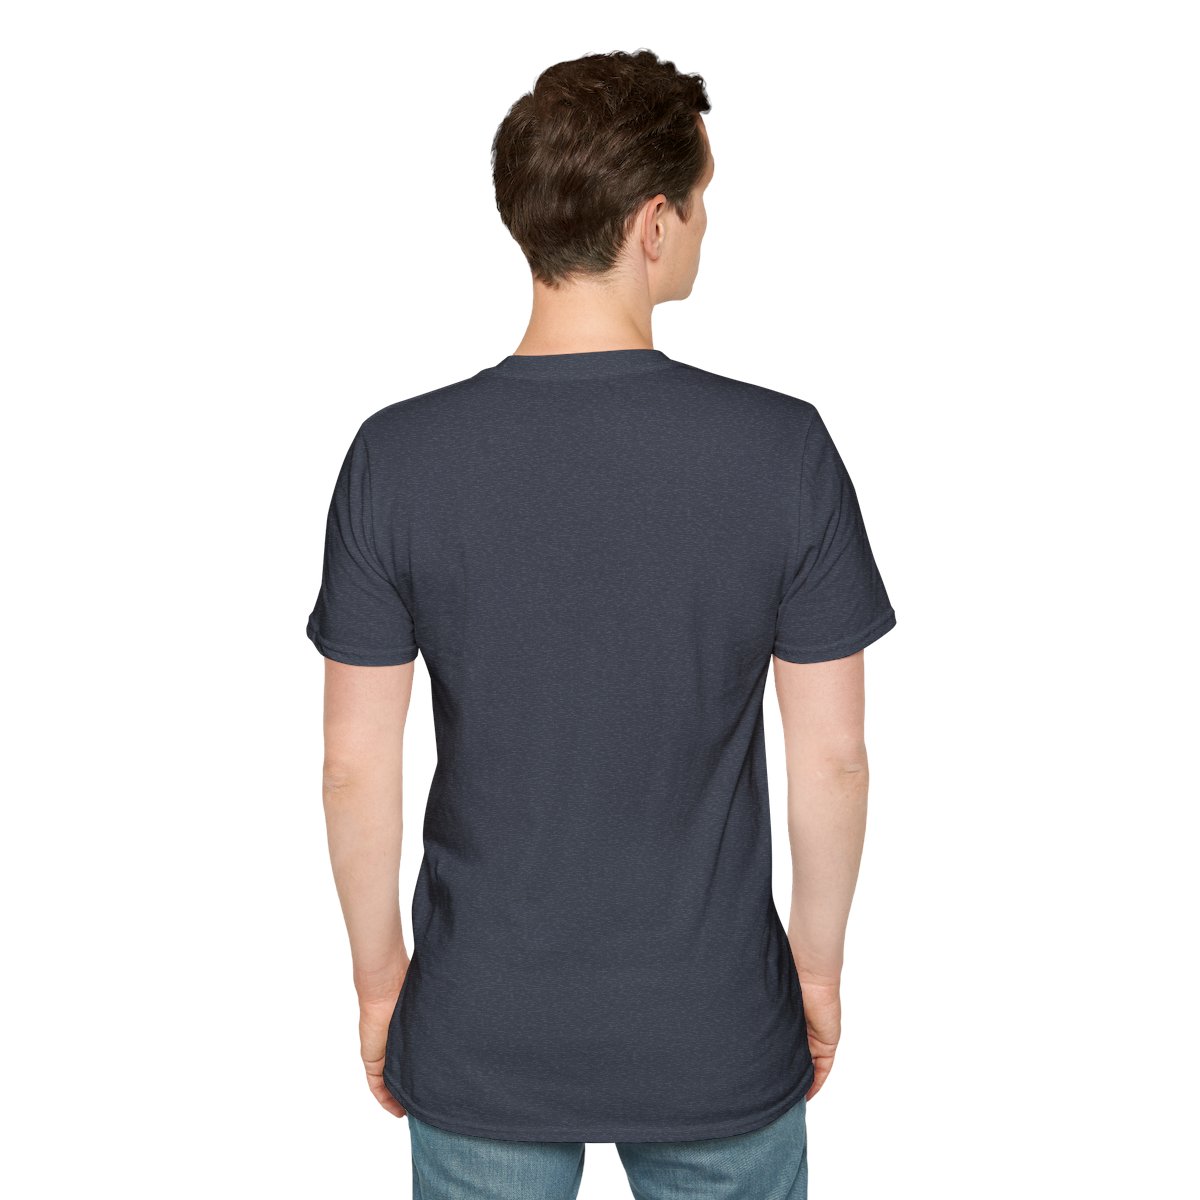 Van Unisex Softstyle T-Shirt product thumbnail image